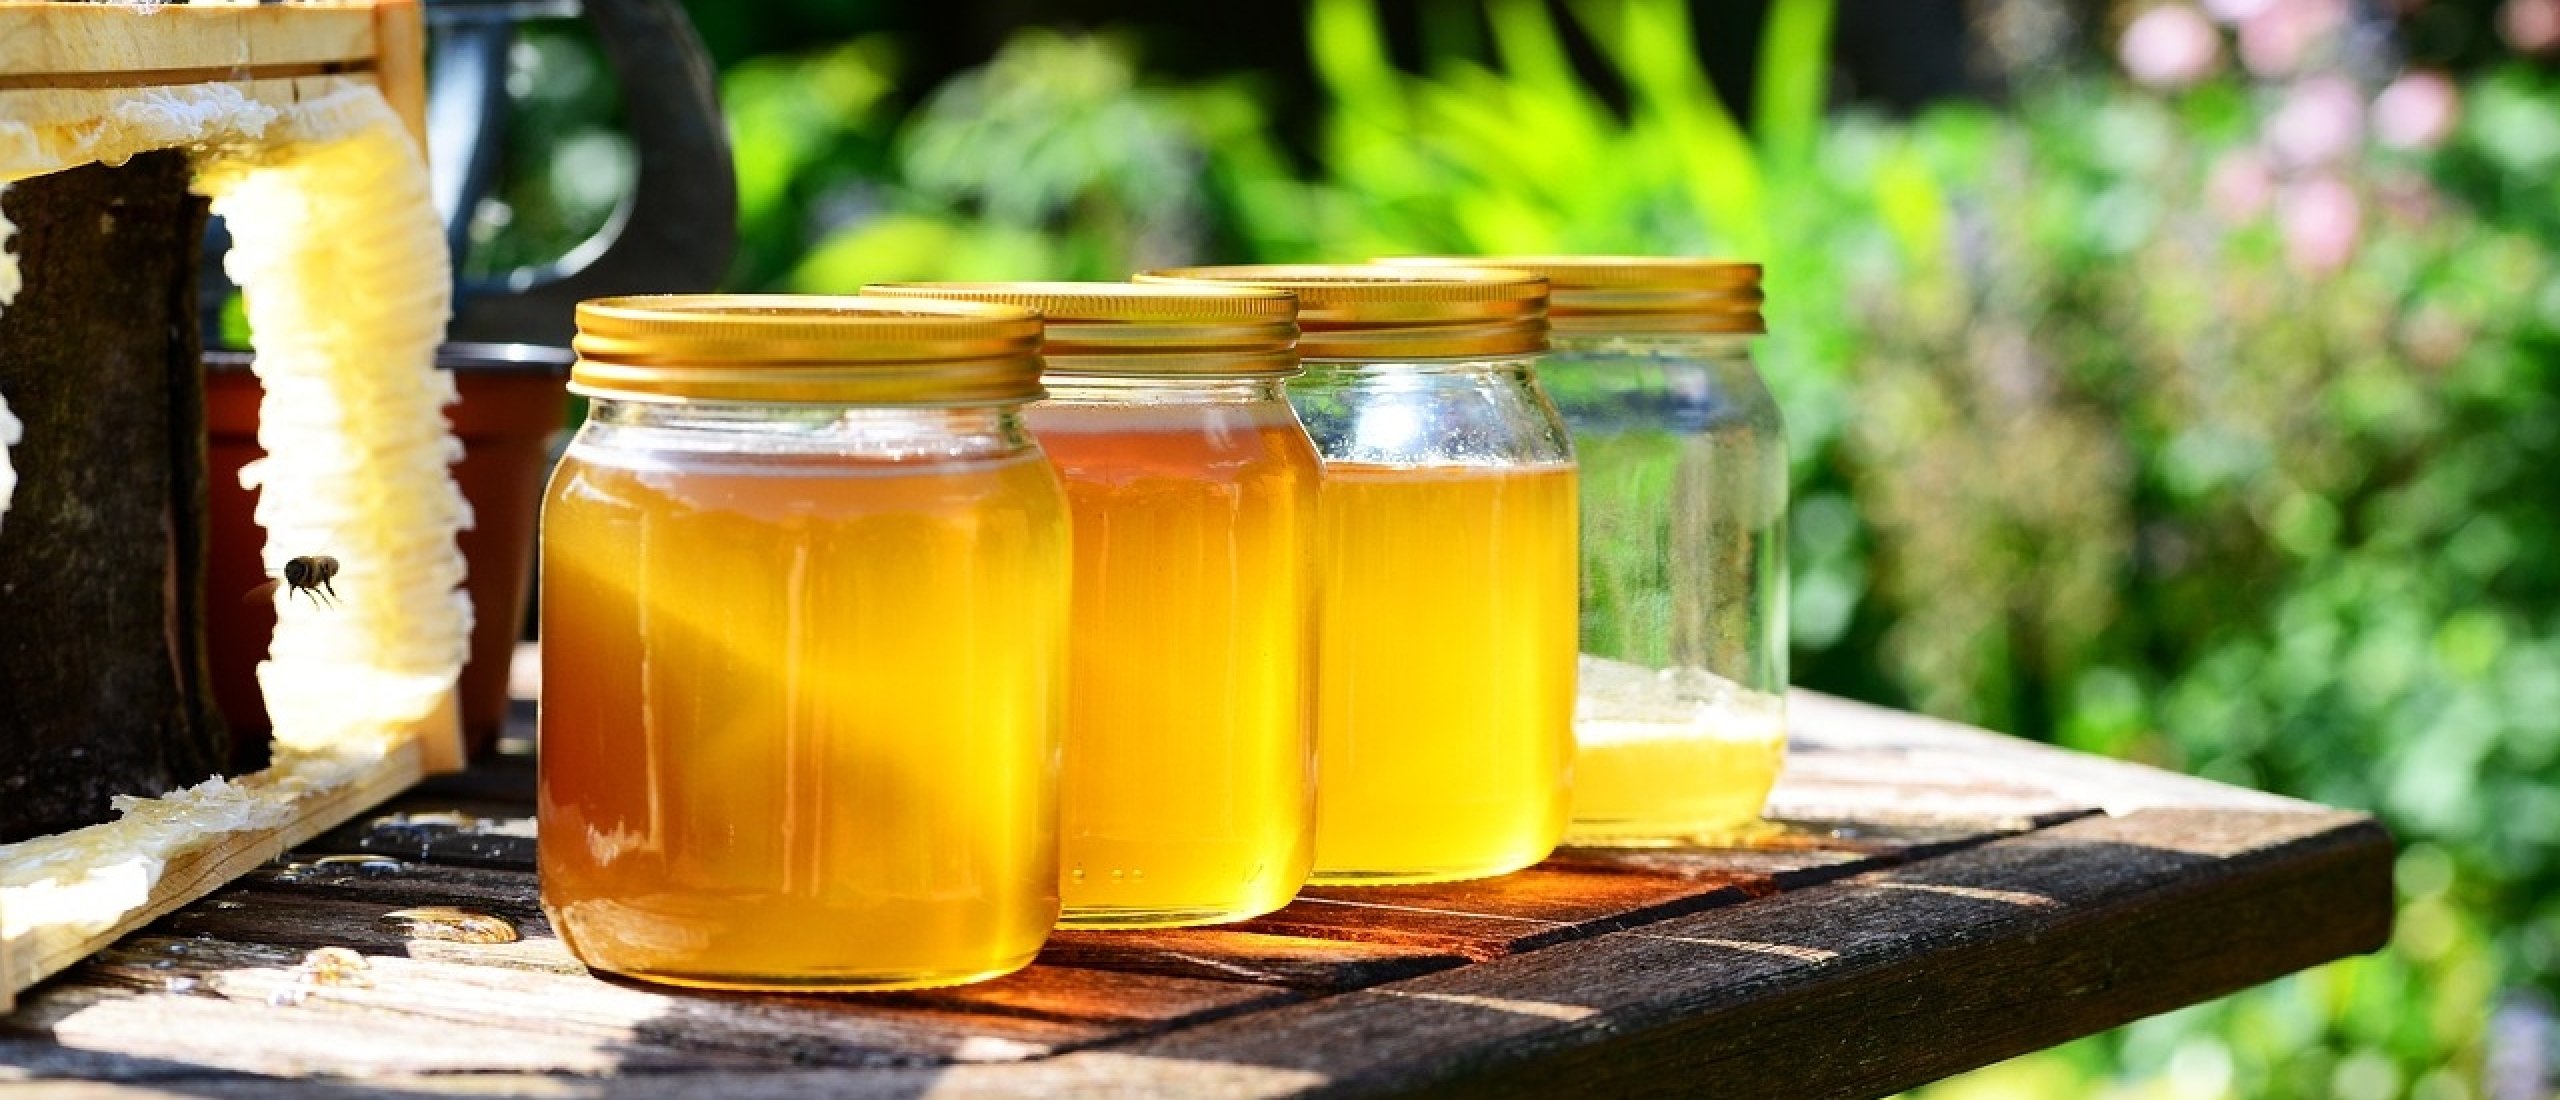 Wat zijn de voordelen van rauwe honing